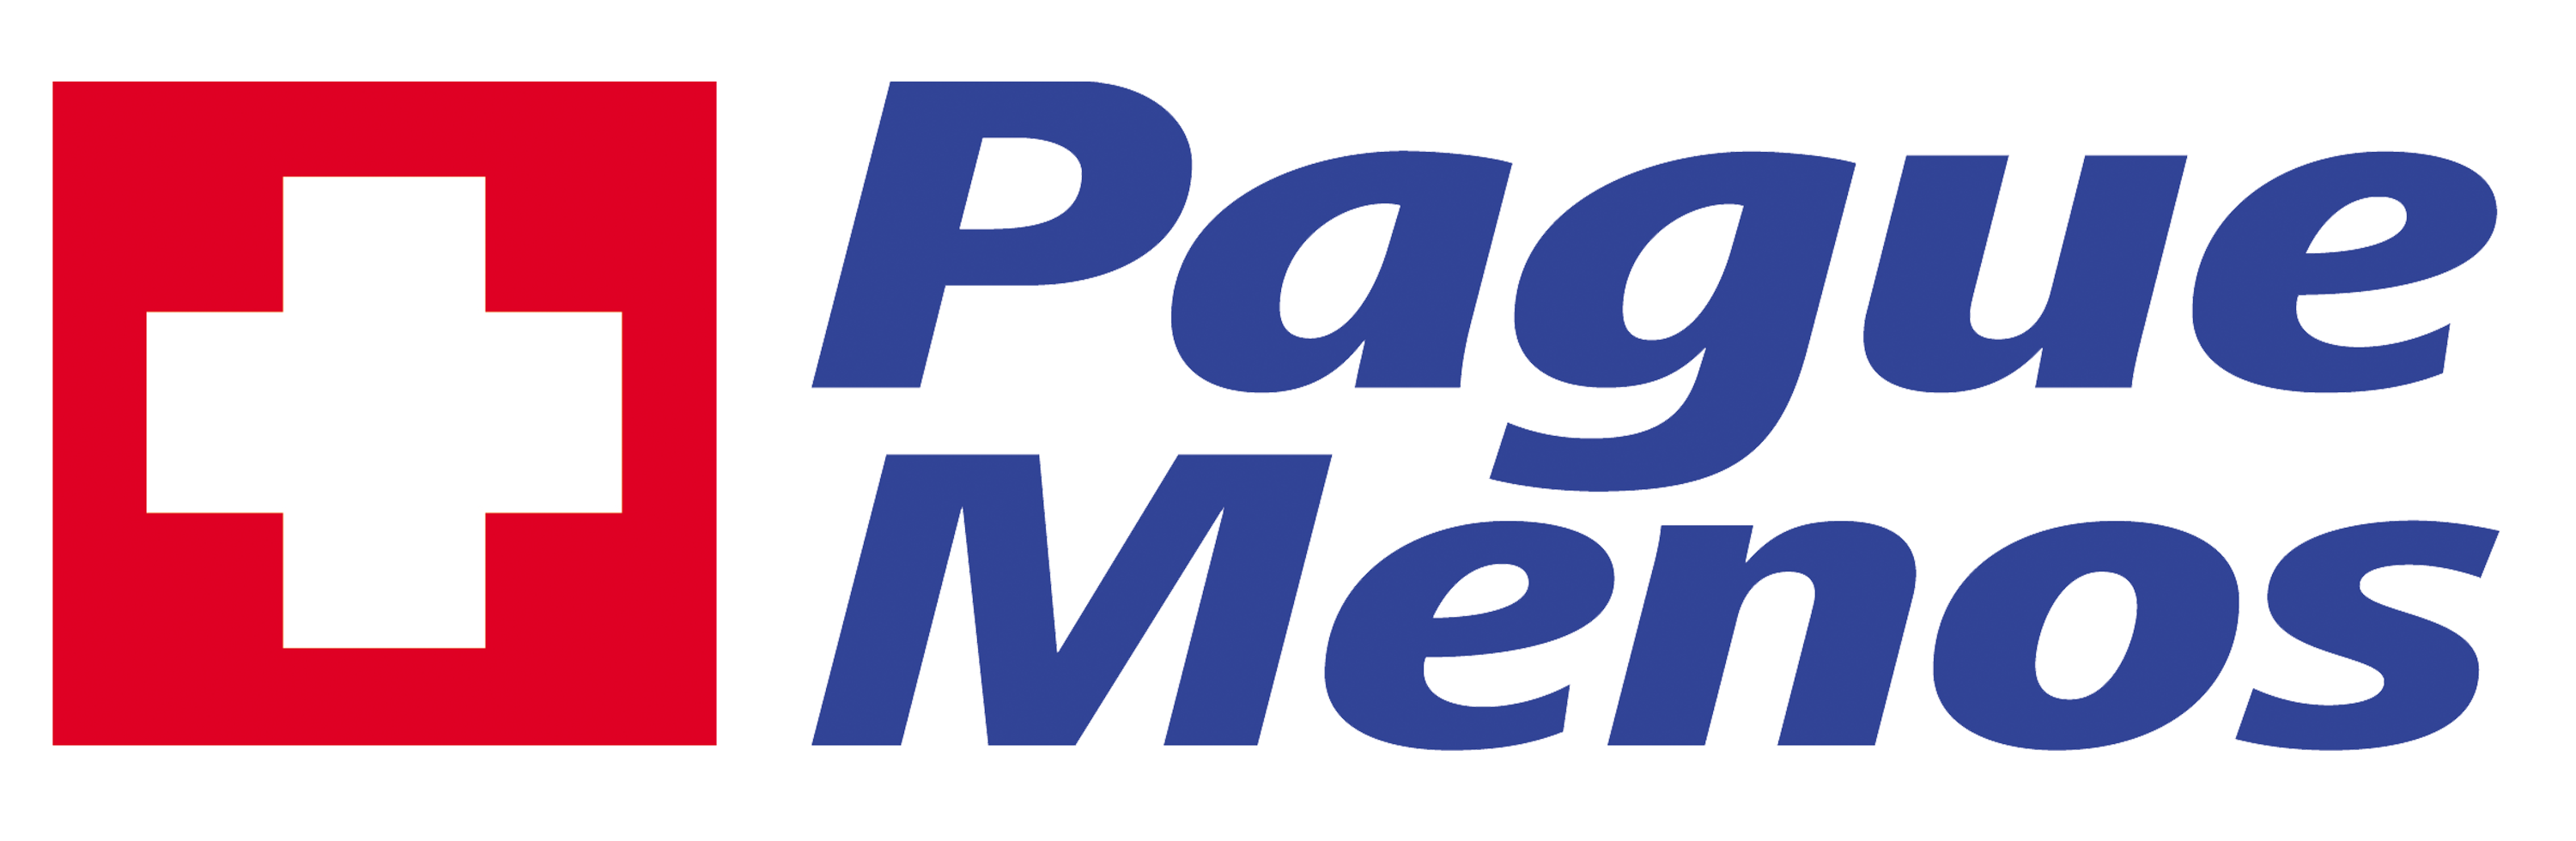 Farmacia Pague Menos- Itapetinga BA